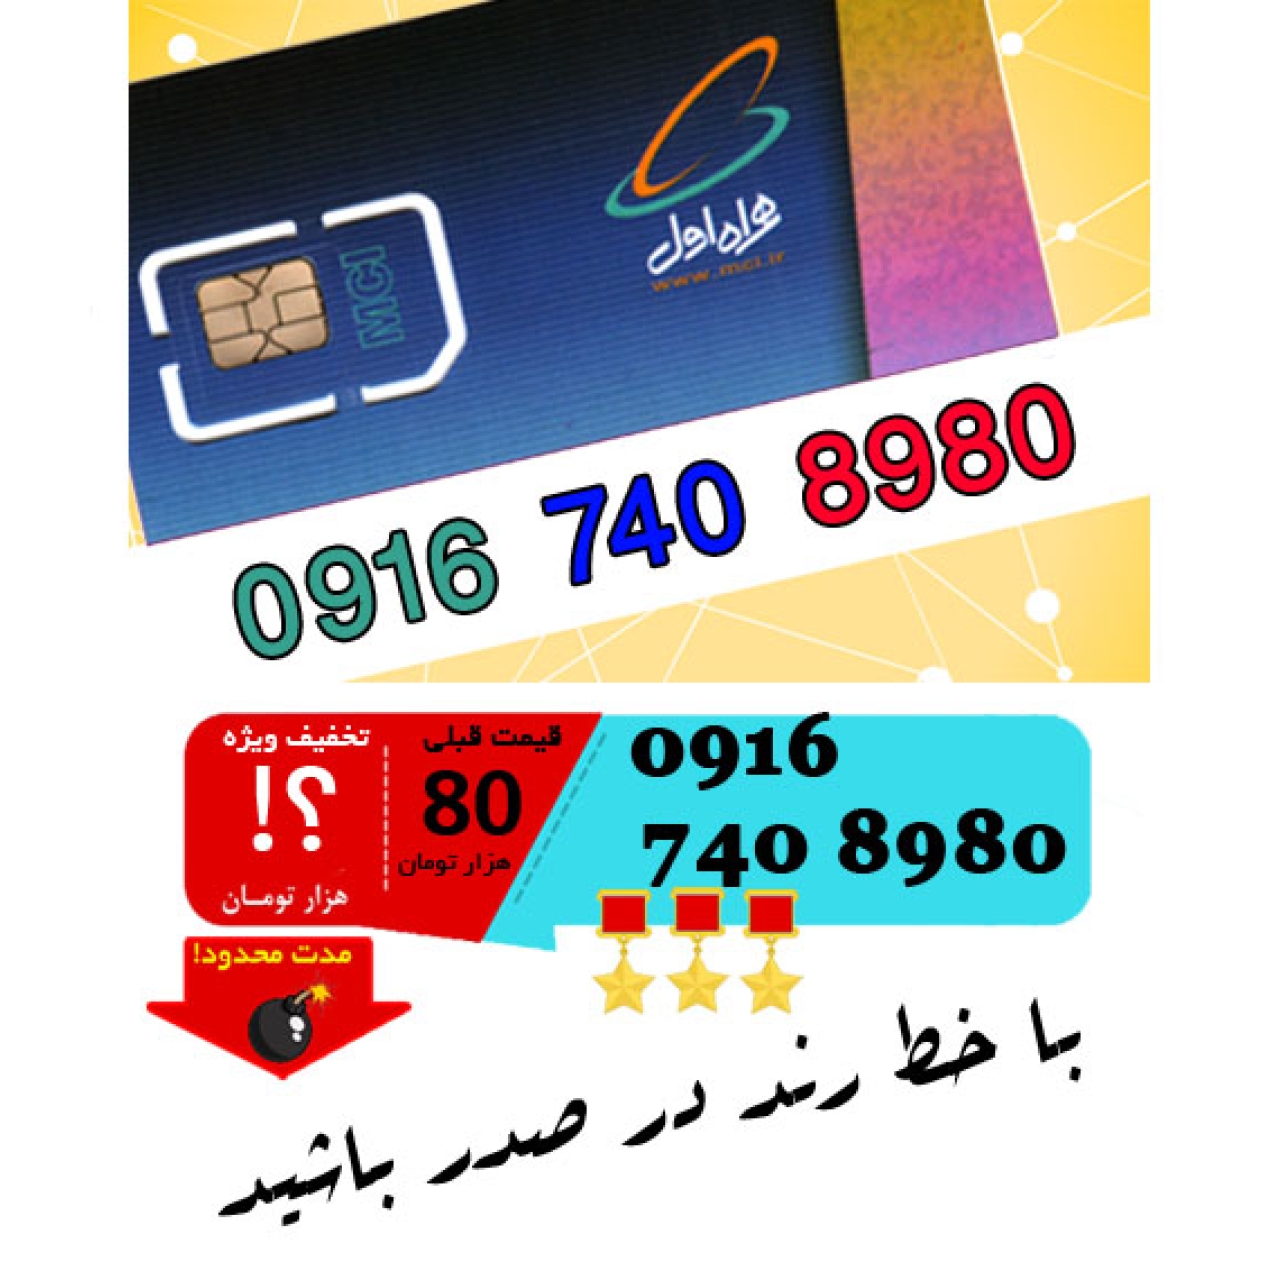 سیم کارت اعتباری رند همراه اول 09167408980